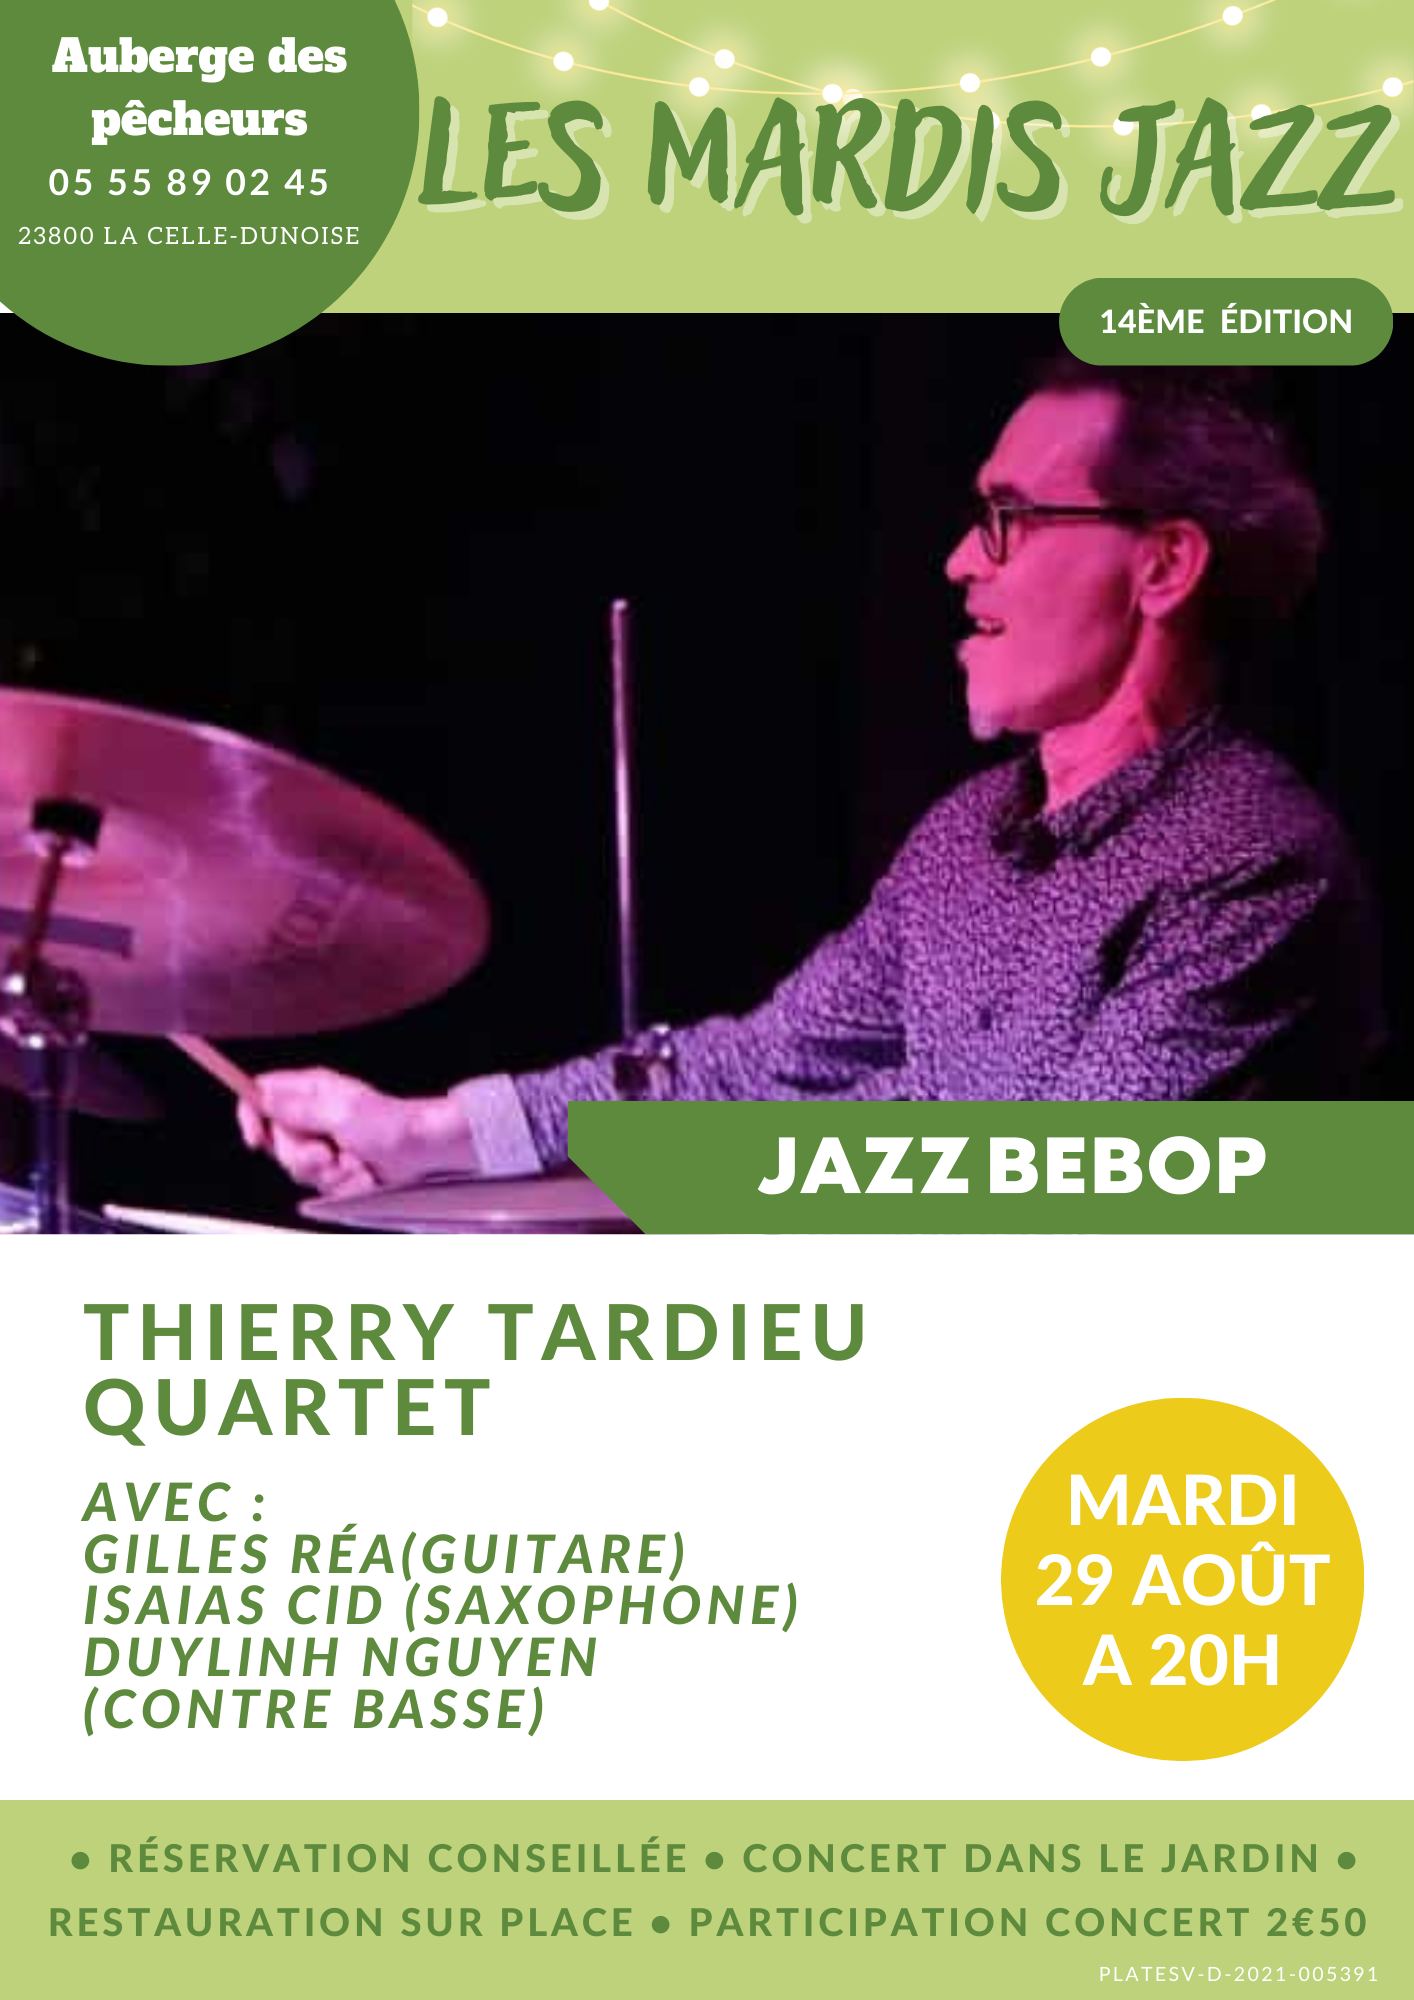 Thierry Tardieu quartet